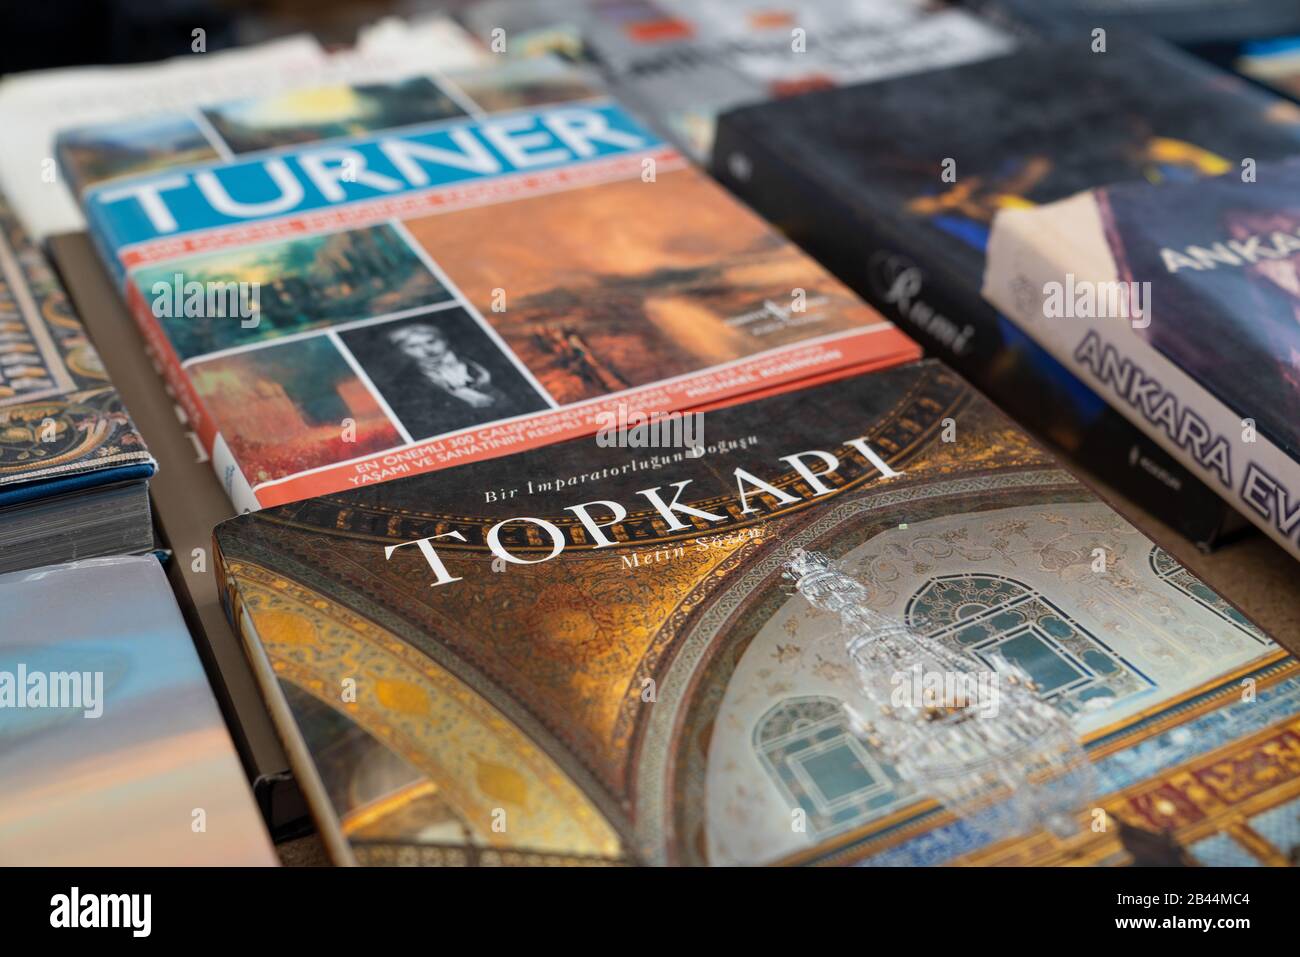 Ankara/Turchia - 01 marzo 2020: Il libro su Topkapi che è un vecchio saray ottomano in un mercato delle pulci Foto Stock